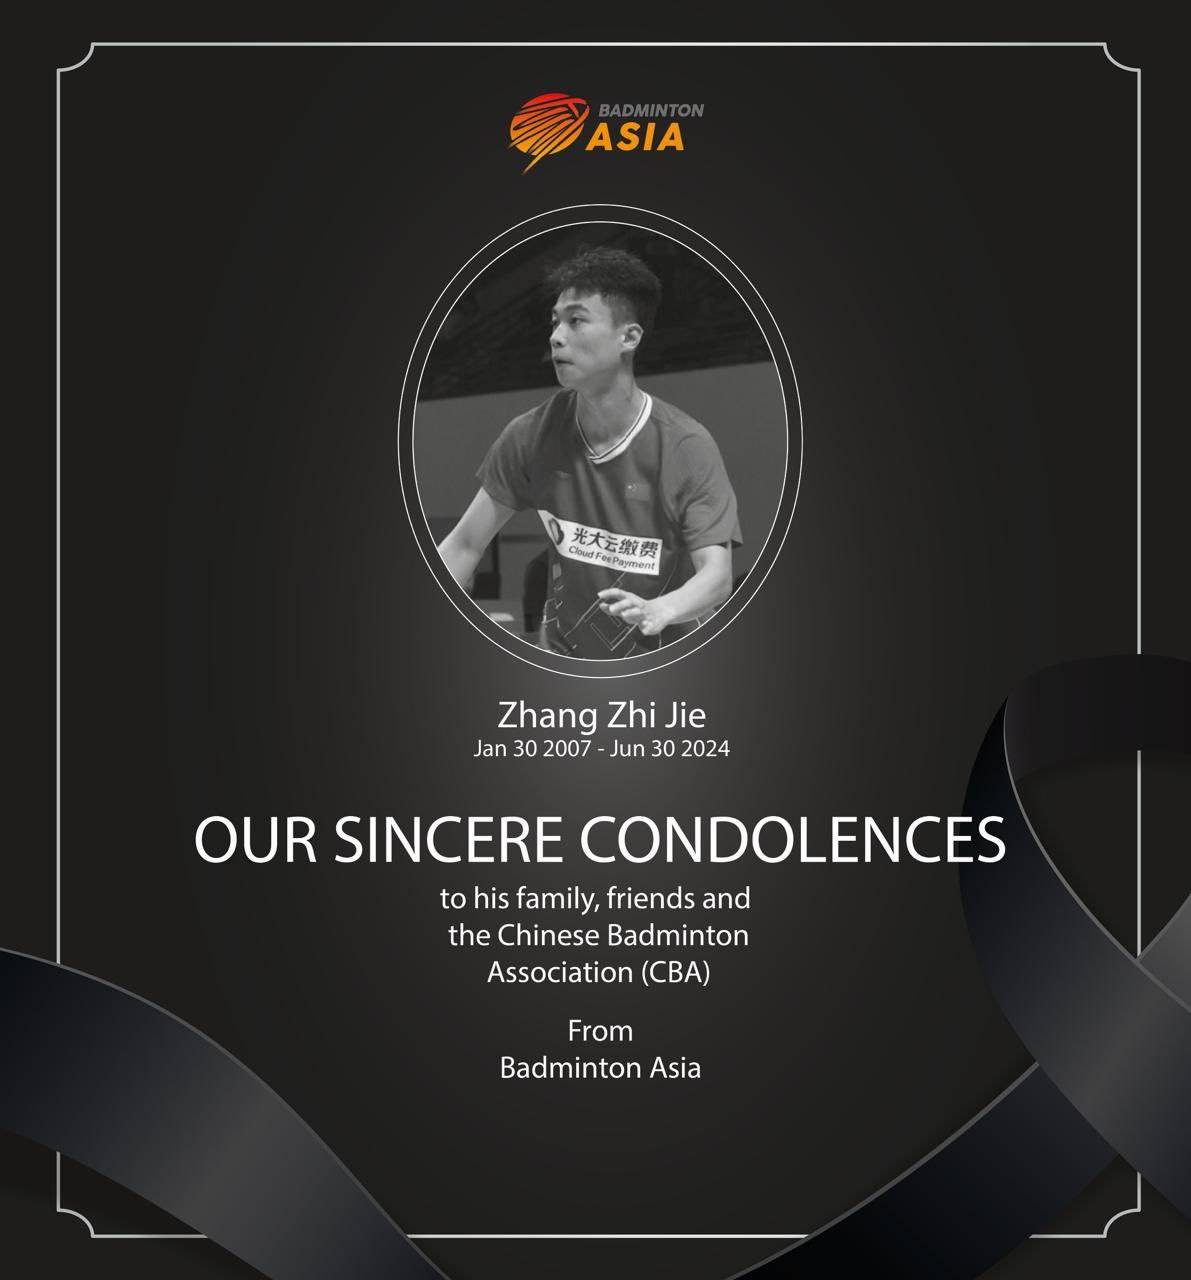 亚羽联对中国羽毛球运动员张志杰去世表示哀悼